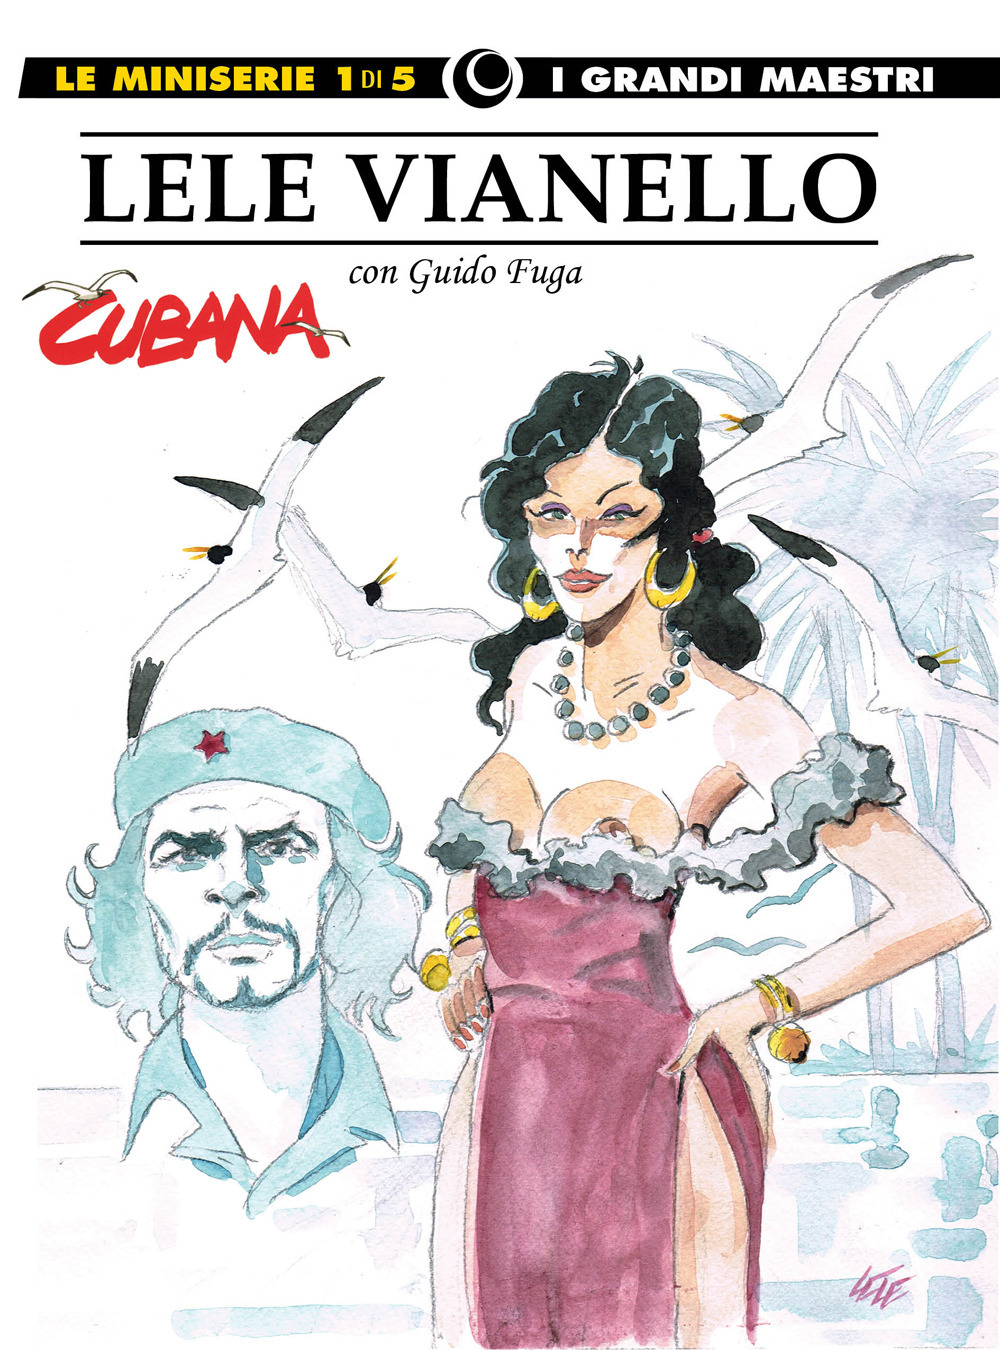 Lele Vianello. Le miniserie. Vol. 1: Cubana